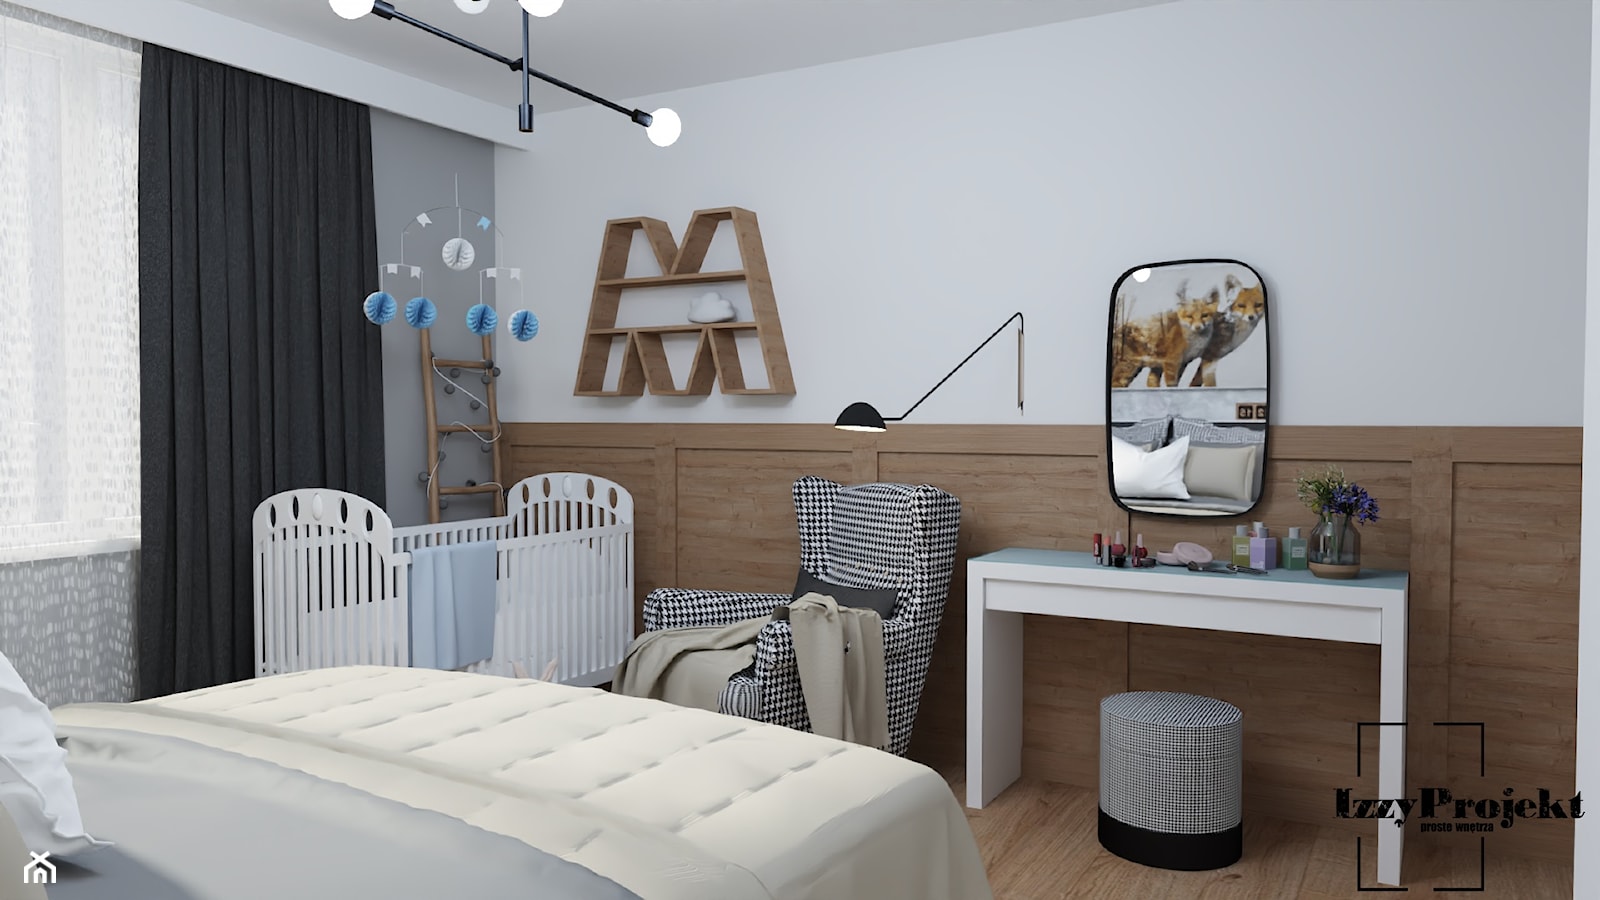 Sypialnia w dwóch odsłonach - Sypialnia, styl nowoczesny - zdjęcie od IZZY PROJEKT - Homebook